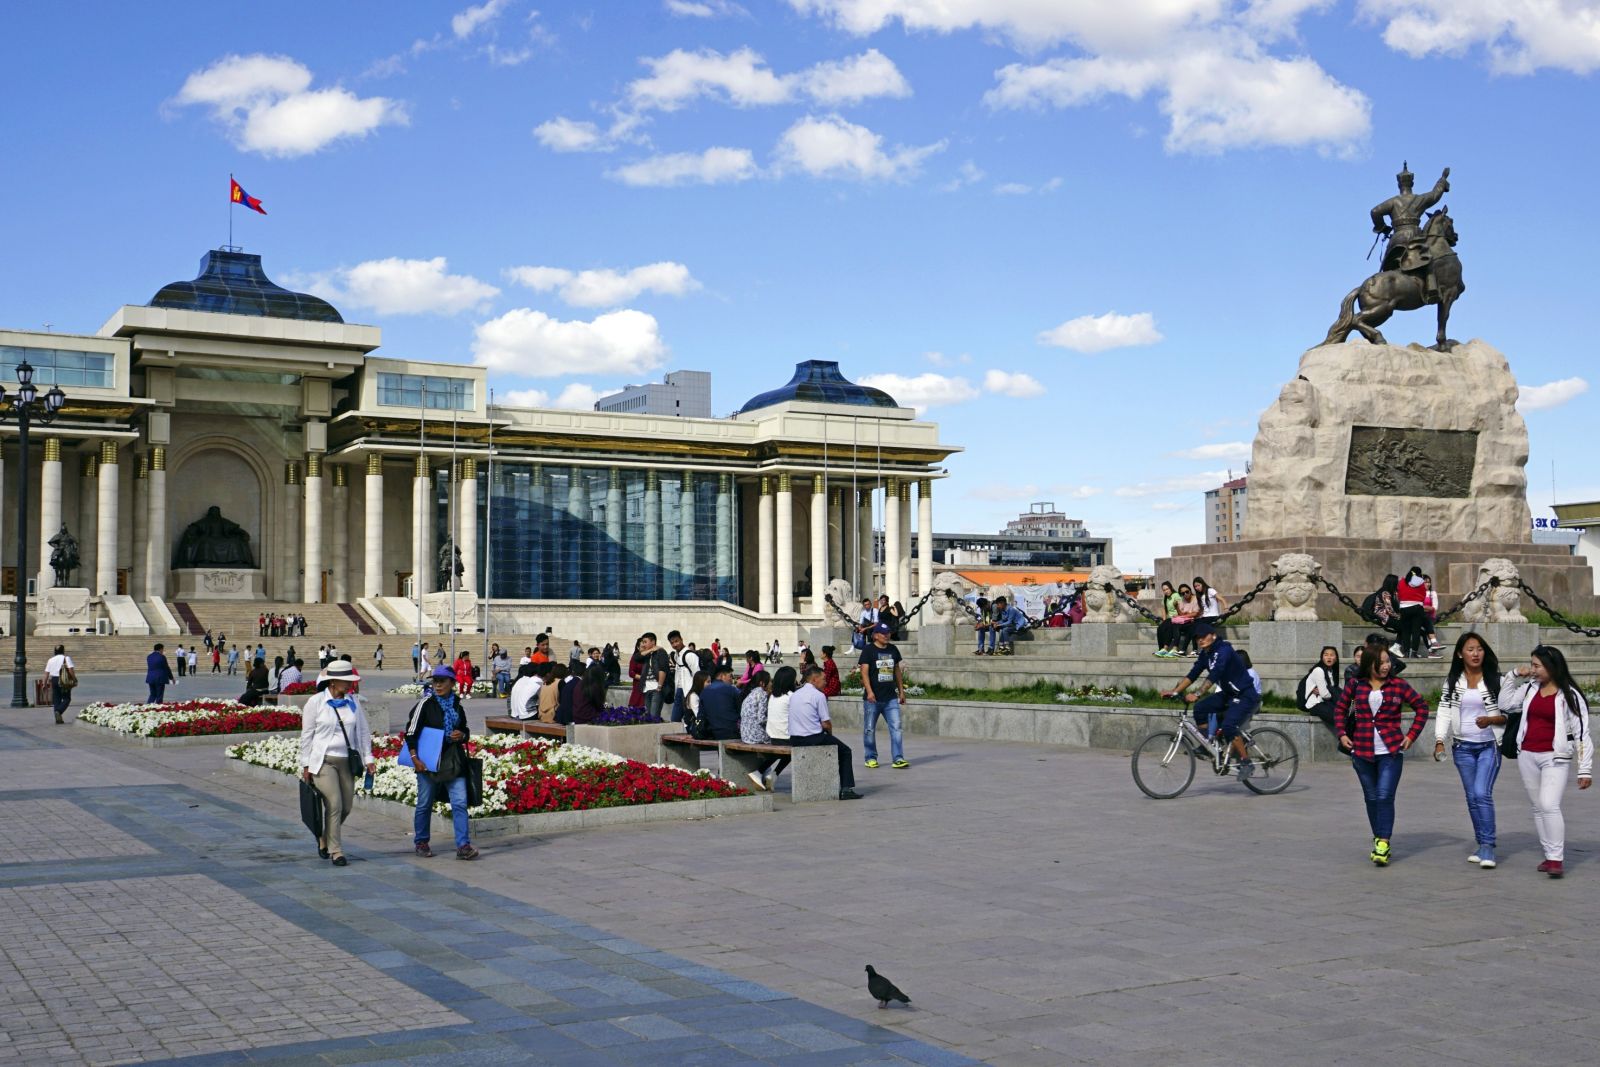 Ulaanbaatar – Sukhbatar Platz